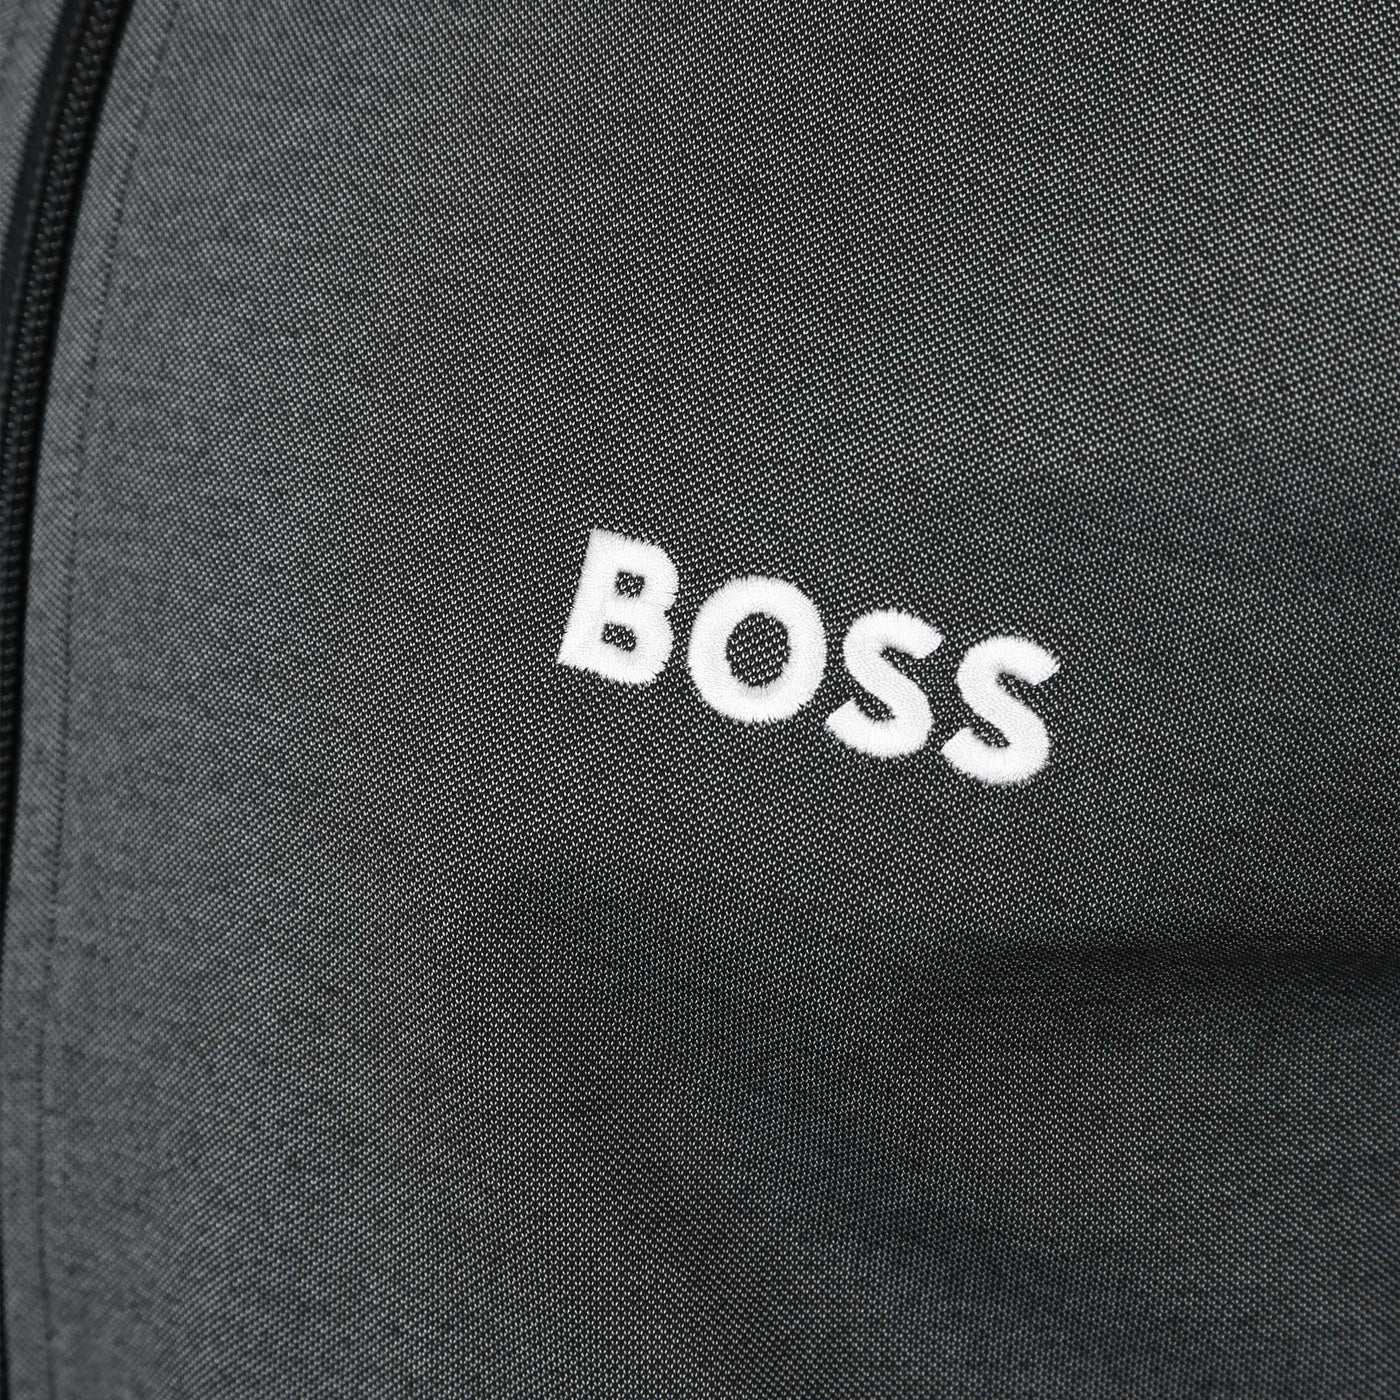 BOSS Tracksuit Jacket Sweat Top in Black Logo